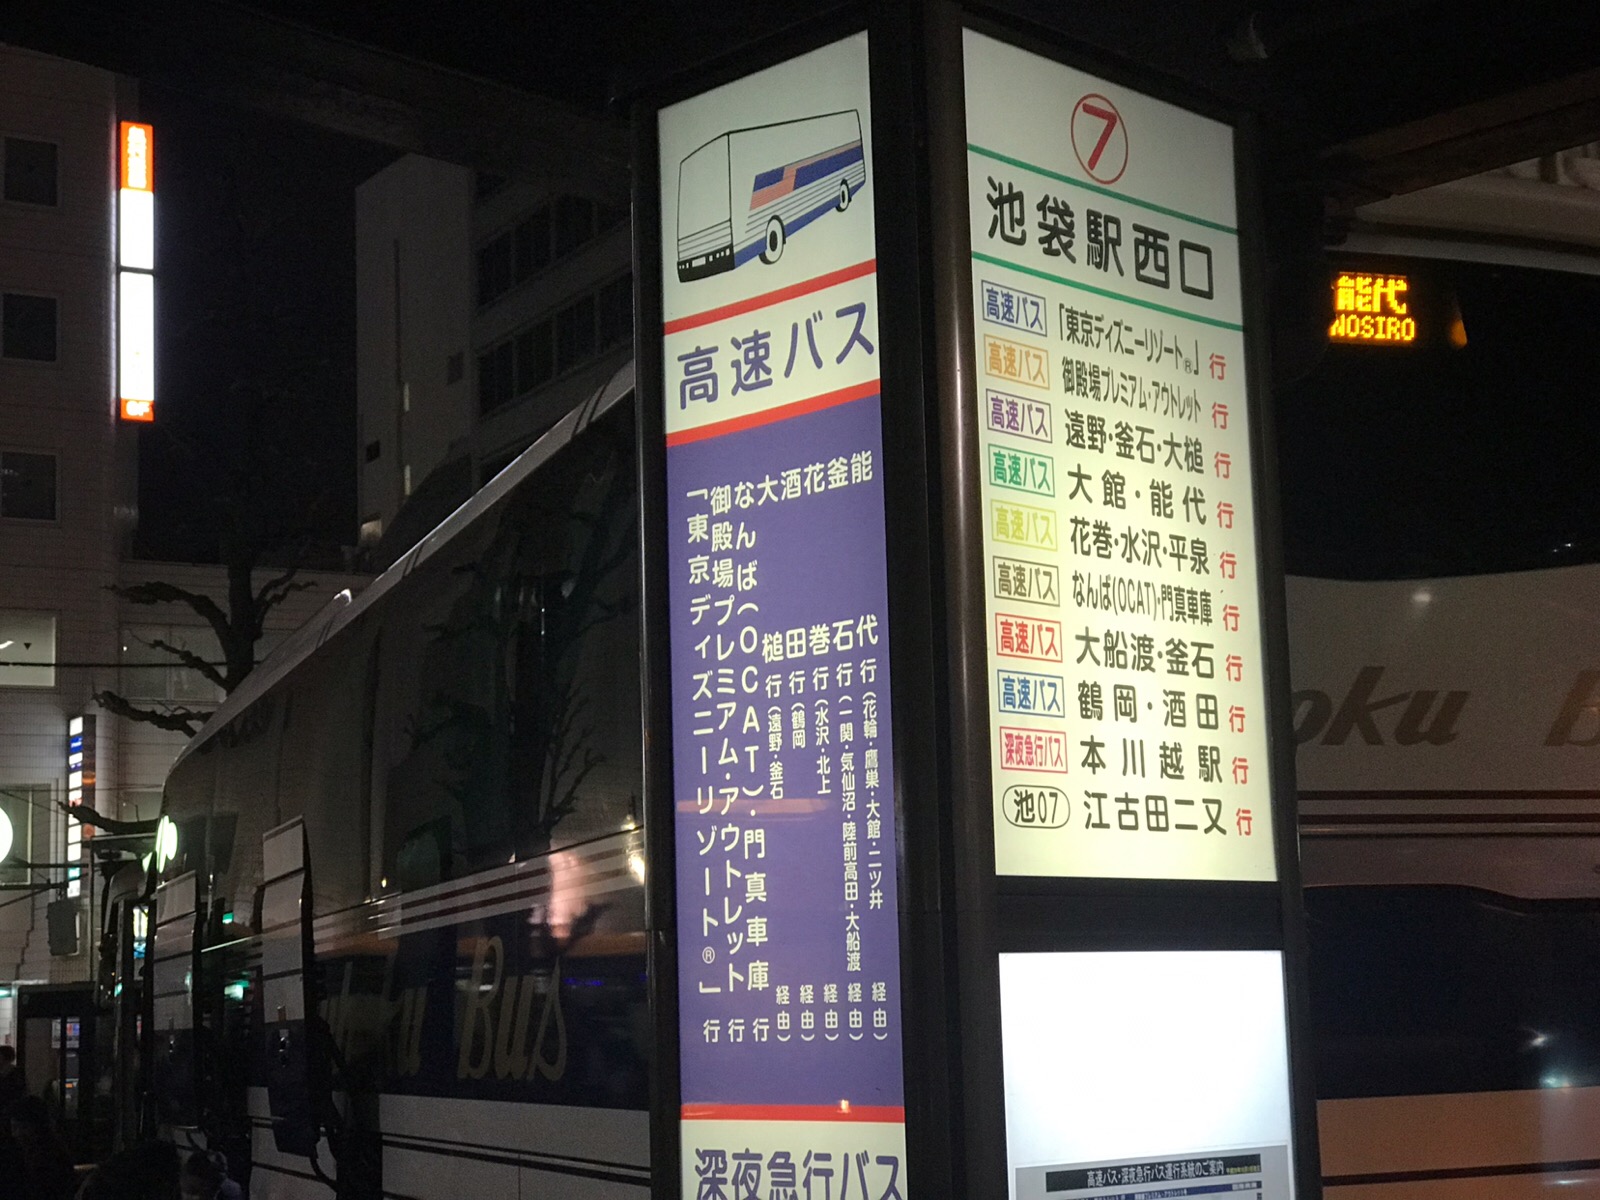 ベルギービール カフェ ベルオーブ 東京芸術劇場 池袋駅西口 夜行バス乗り場 すぐの店 みきと行こう